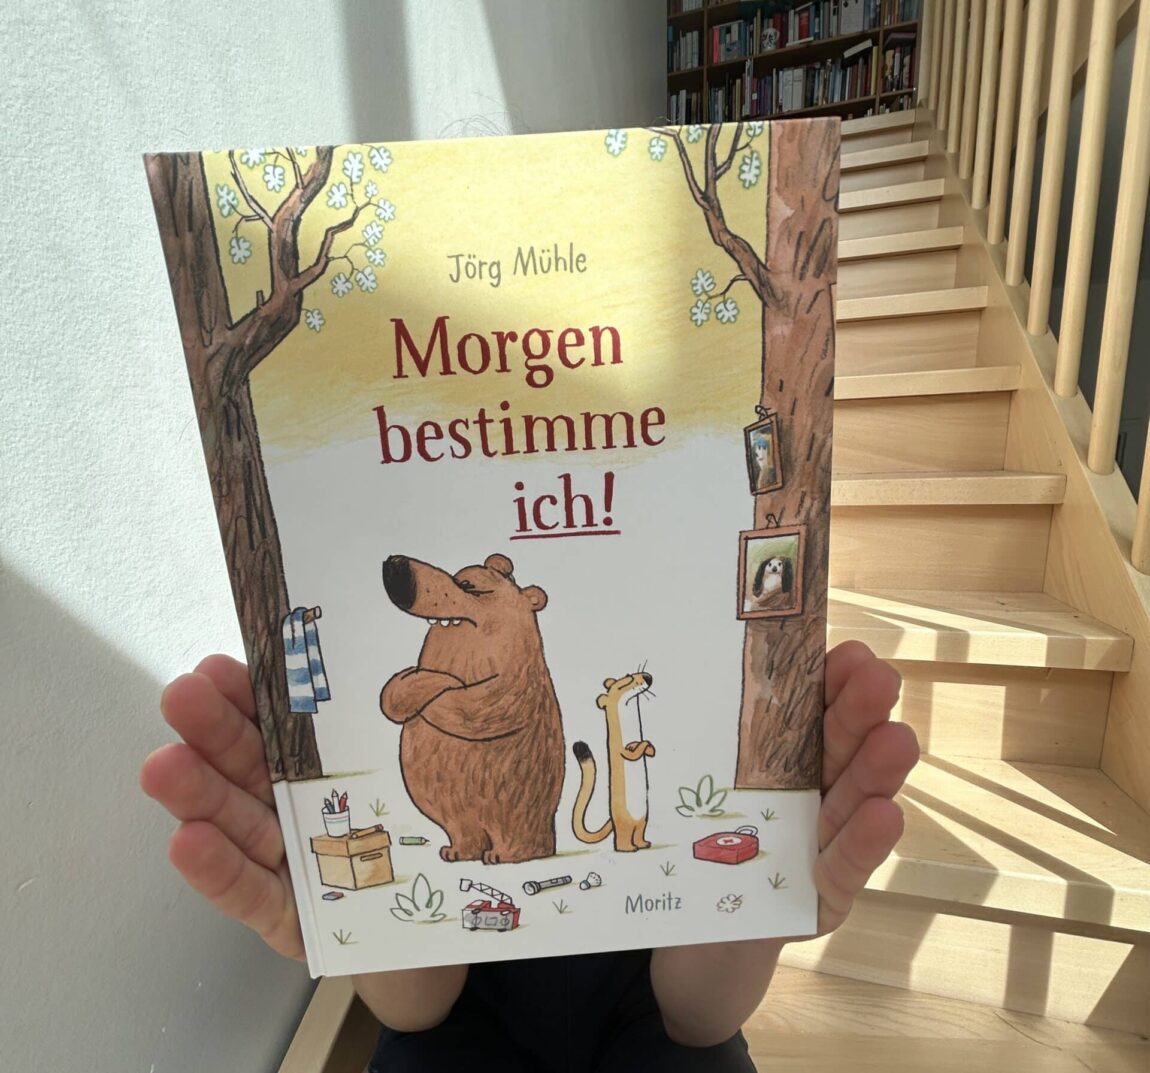 Morgen bestimme ich von Jörg Mühle, Moritz Verlag